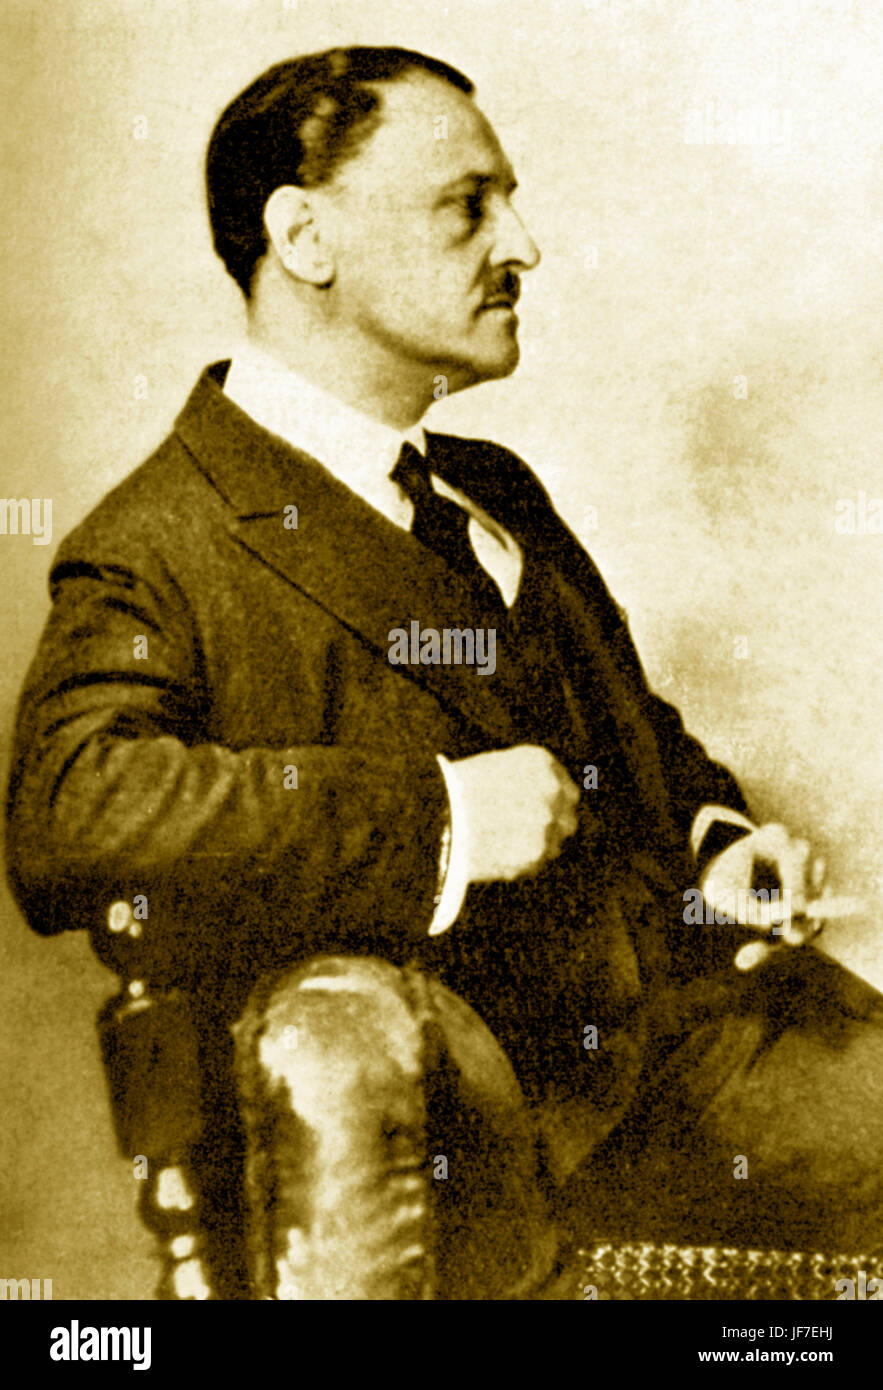 Somerset Maugham - Ritratto del drammaturgo britannico, romanziere e breve storia scrittore, c. 1933. 25 Gennaio 1874 - 16 dicembre 1965. Foto Stock